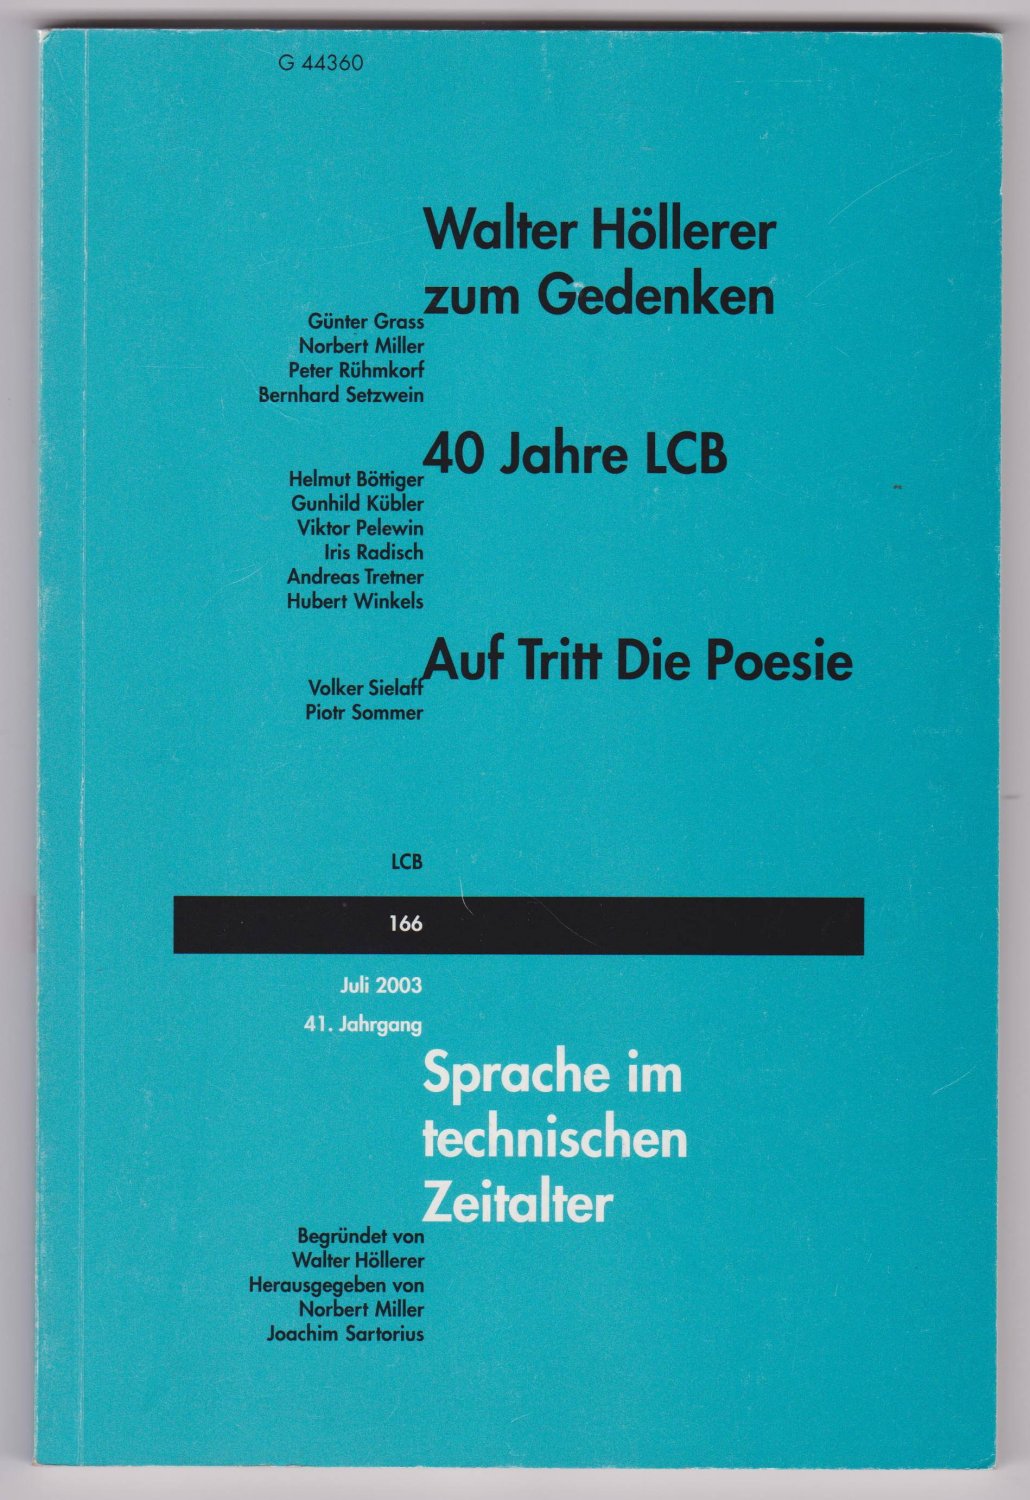 HÖLLERER, Walter / LCB. -  Sprache im technischen Zeitalter. Walter Höllerer zum Gedenken. 40 Jahre LCB. Nr.166 - Juli 2003 - 41.Jahrgang. 